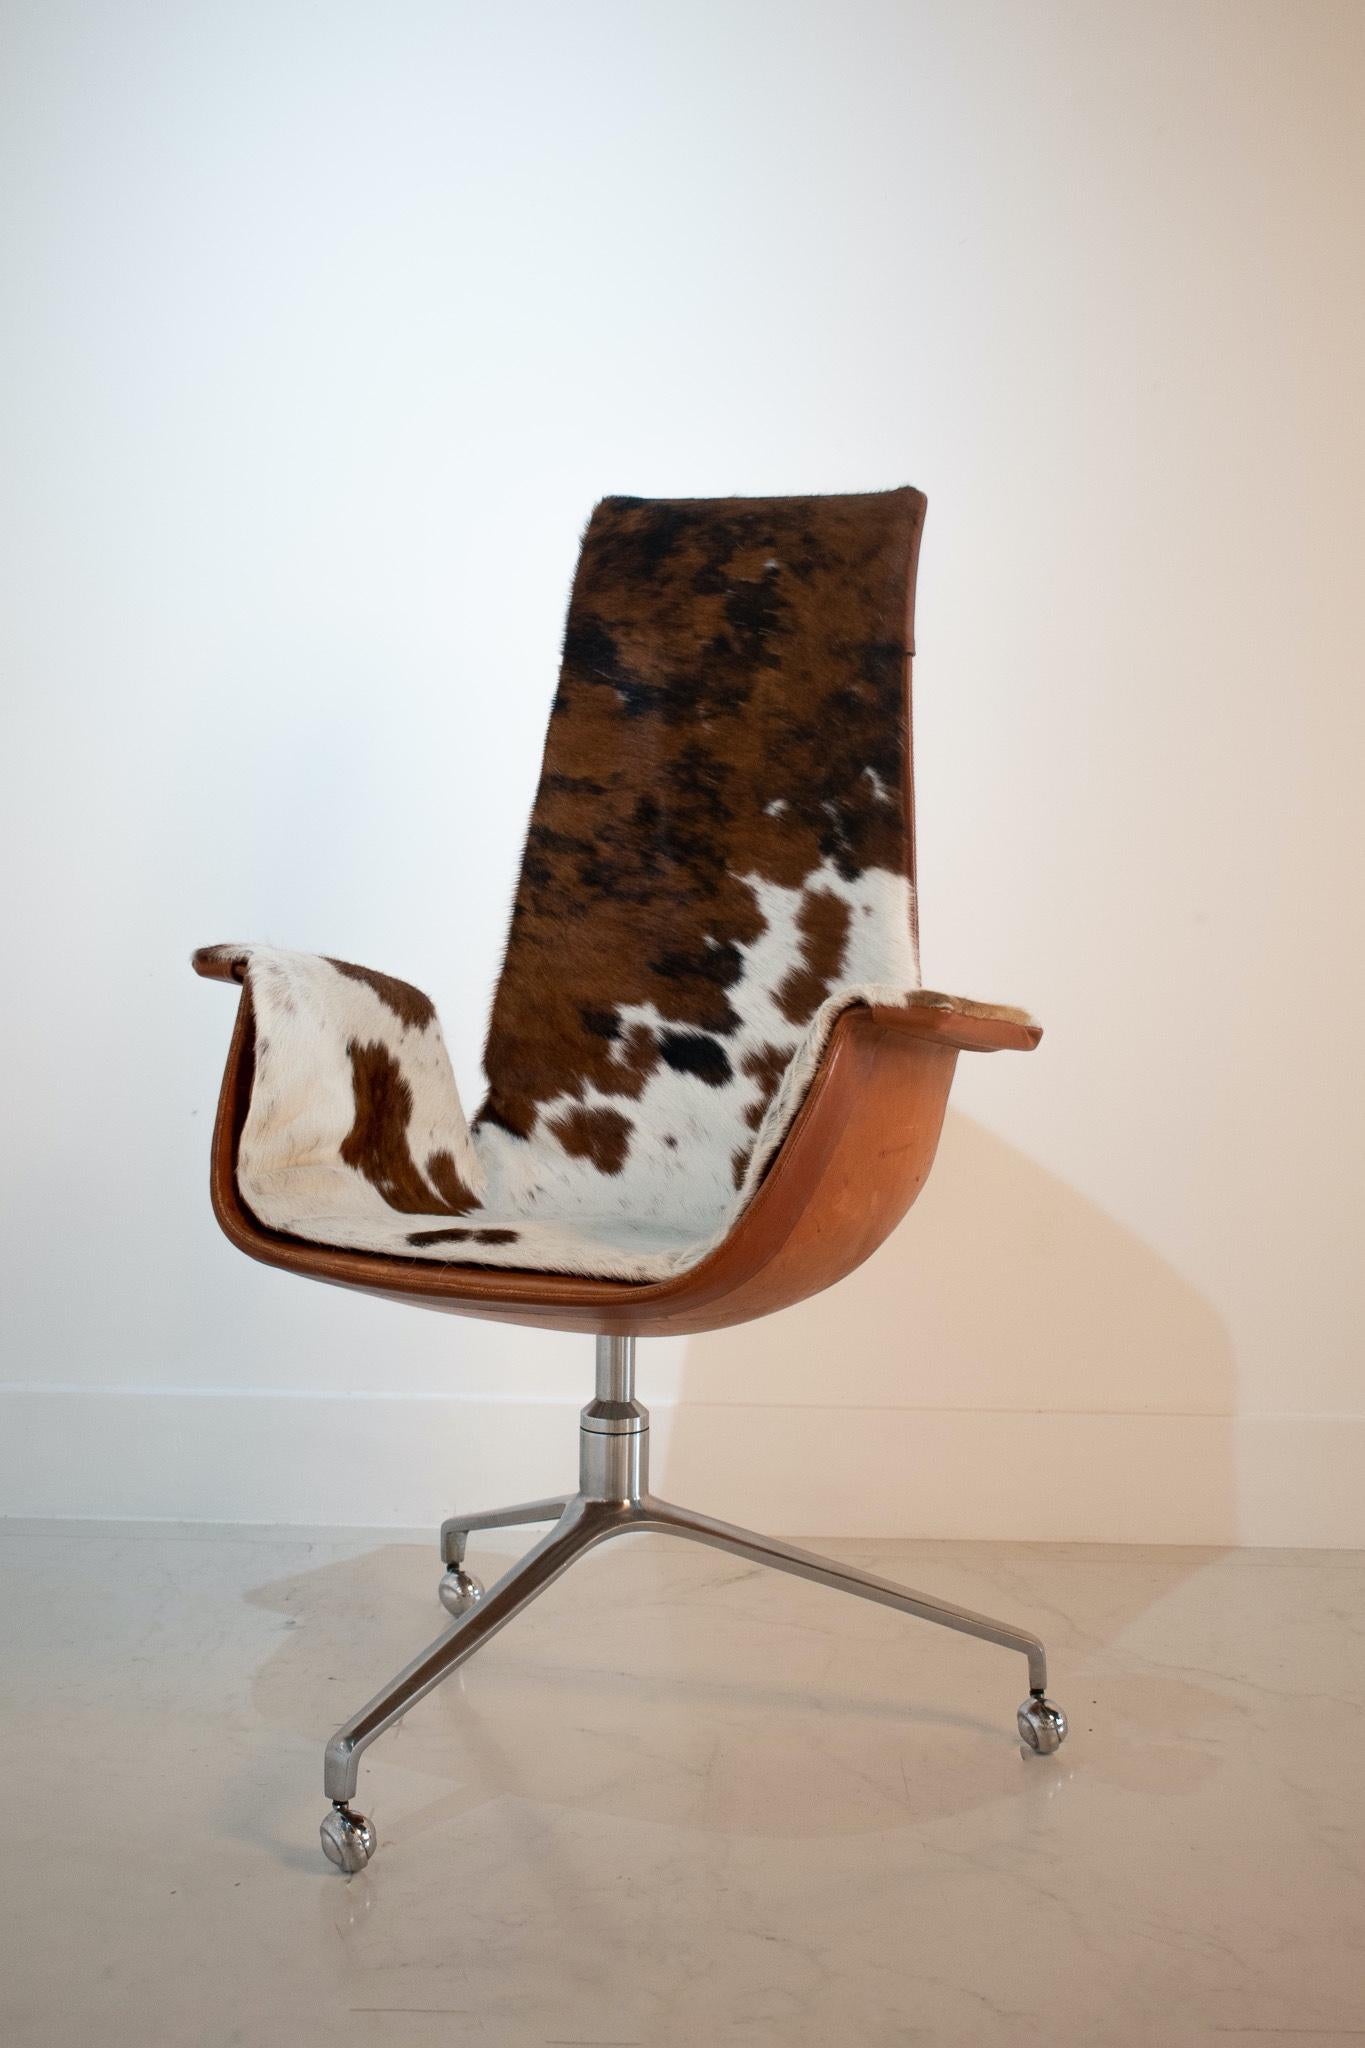 Original 'Bird Chair' von den dänischen Designern Preben Fabricius & Jorgen Kastholm für Kill International, um 1960.

Der 